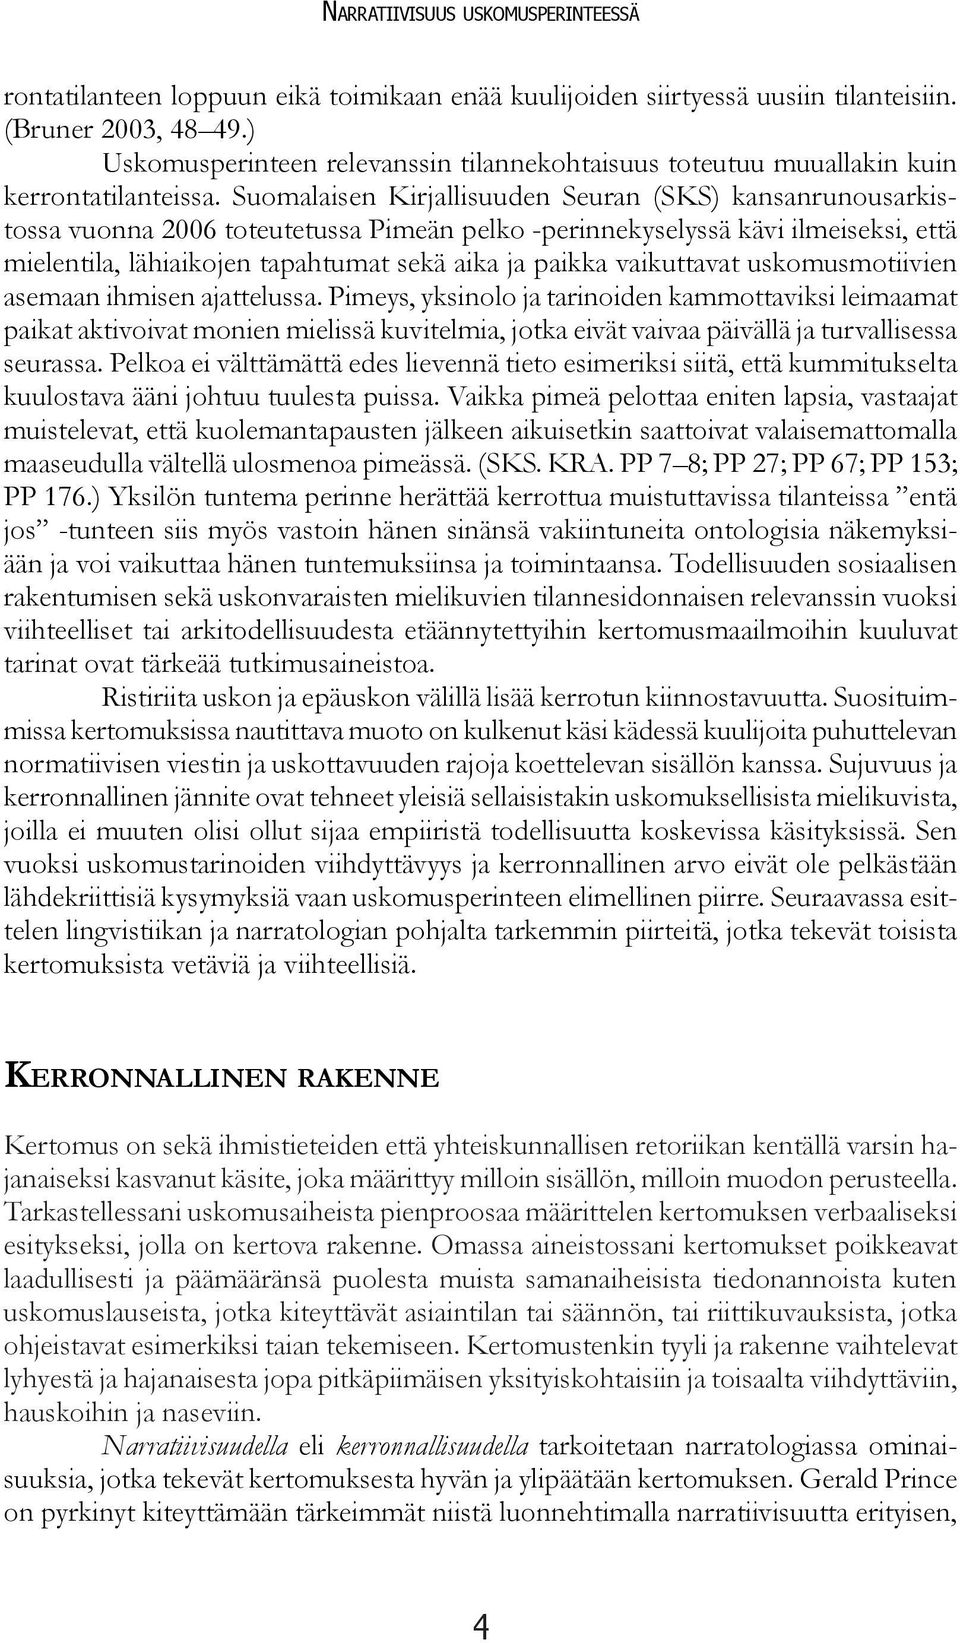 Suomalaisen Kirjallisuuden Seuran (SKS) kansanrunousarkistossa vuonna 2006 toteutetussa Pimeän pelko -perinnekyselyssä kävi ilmeiseksi, että mielentila, lähiaikojen tapahtumat sekä aika ja paikka